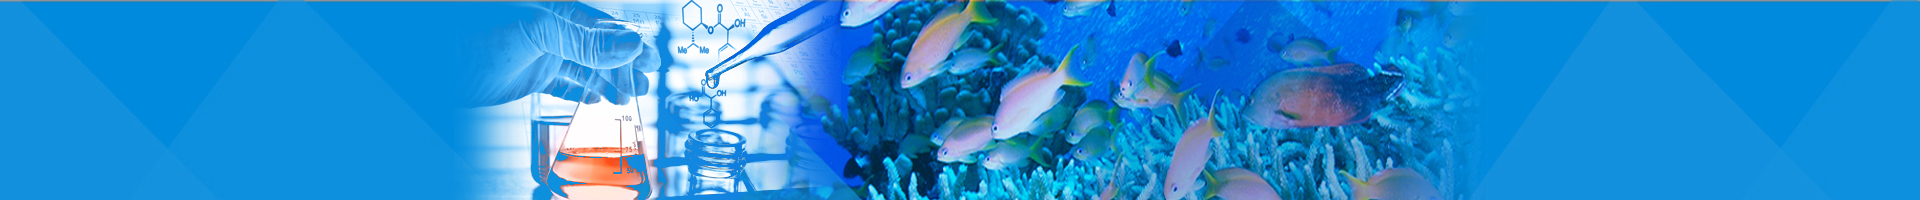 臺灣珊瑚寄生橈足類物種多樣性、生態學研究及珊瑚礁保育